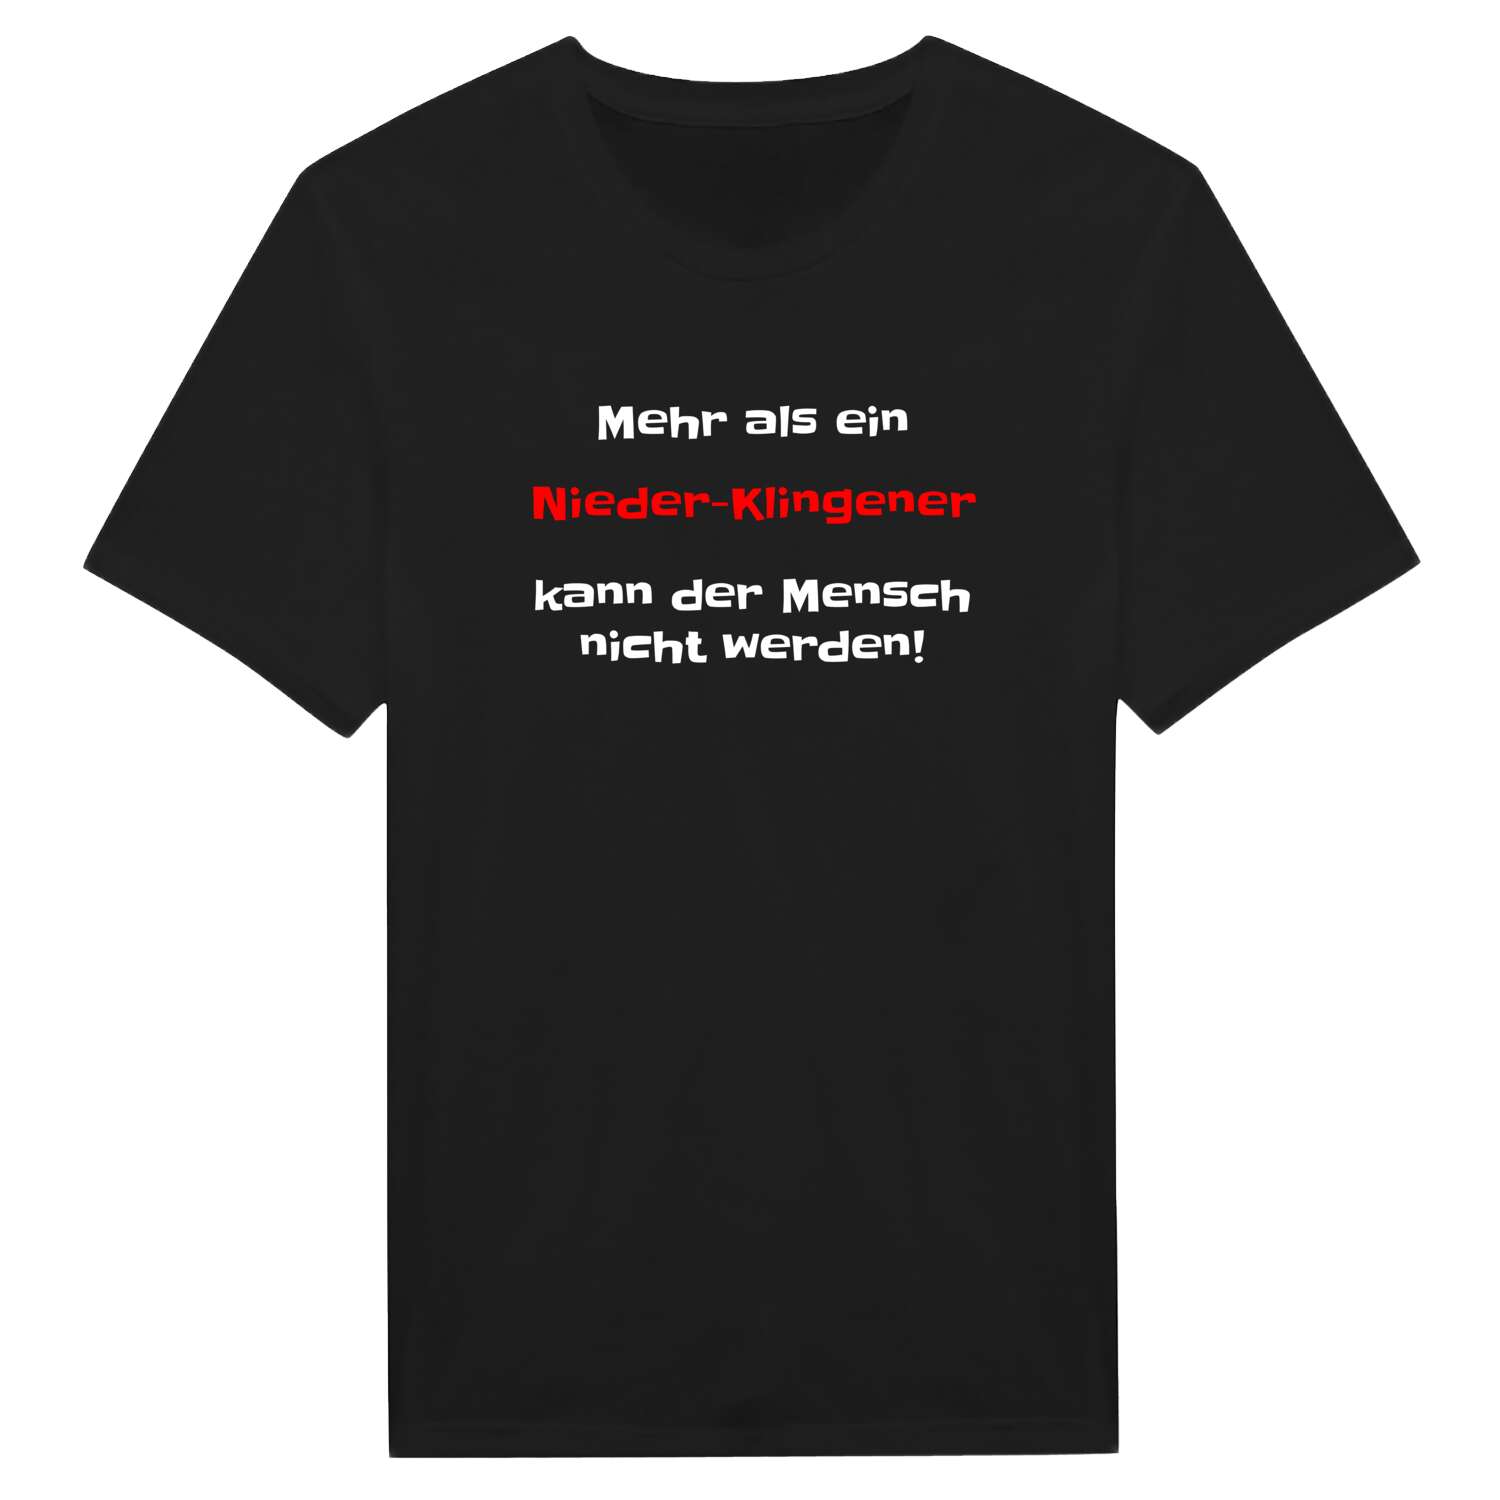 Nieder-Klingen T-Shirt »Mehr als ein«